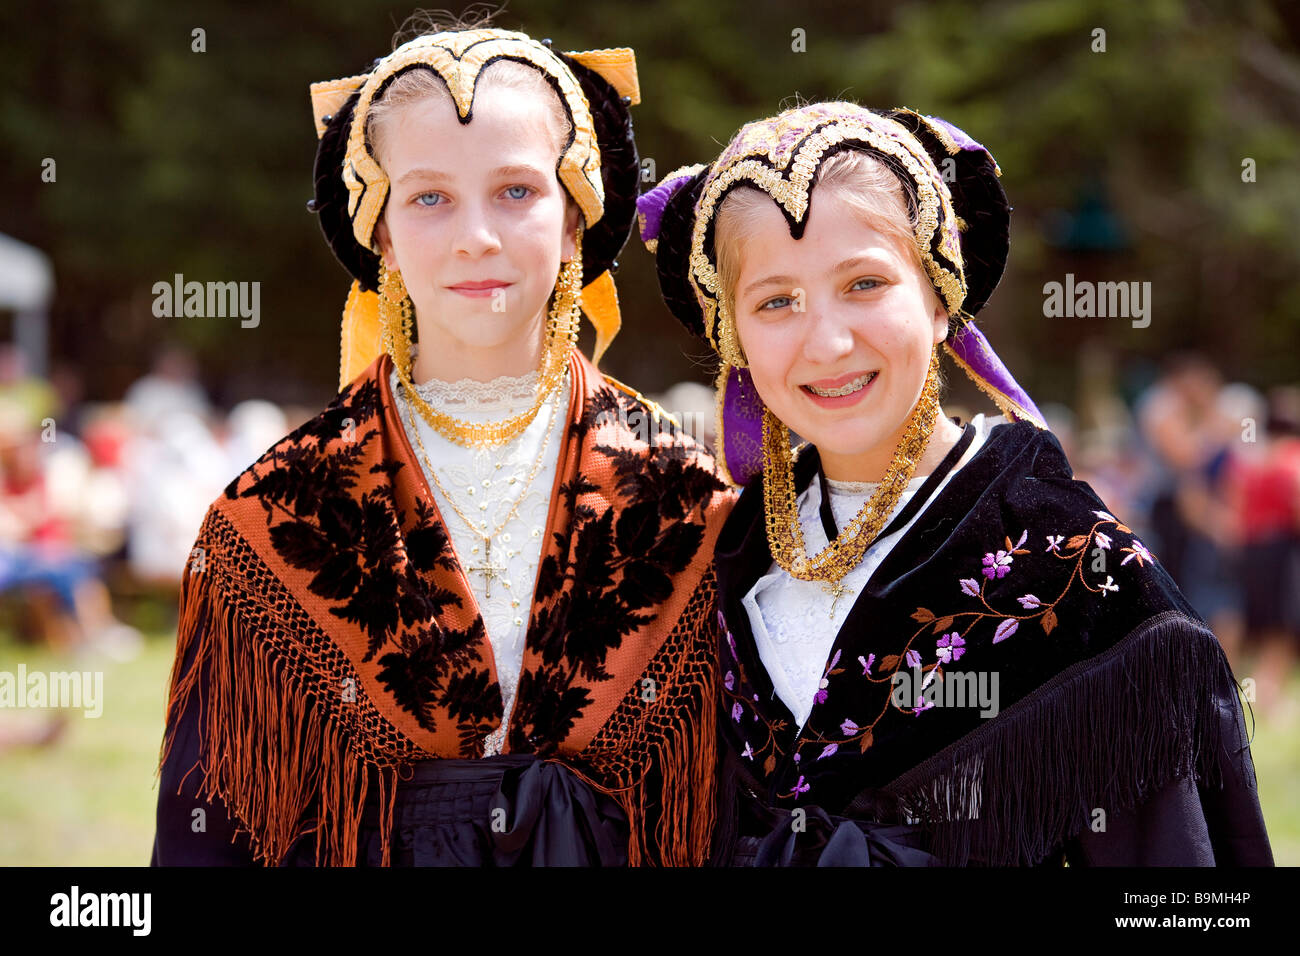 France, Savoie, Peisey Nancroix, Costume et Mountain festival, les jeunes filles portrait Banque D'Images